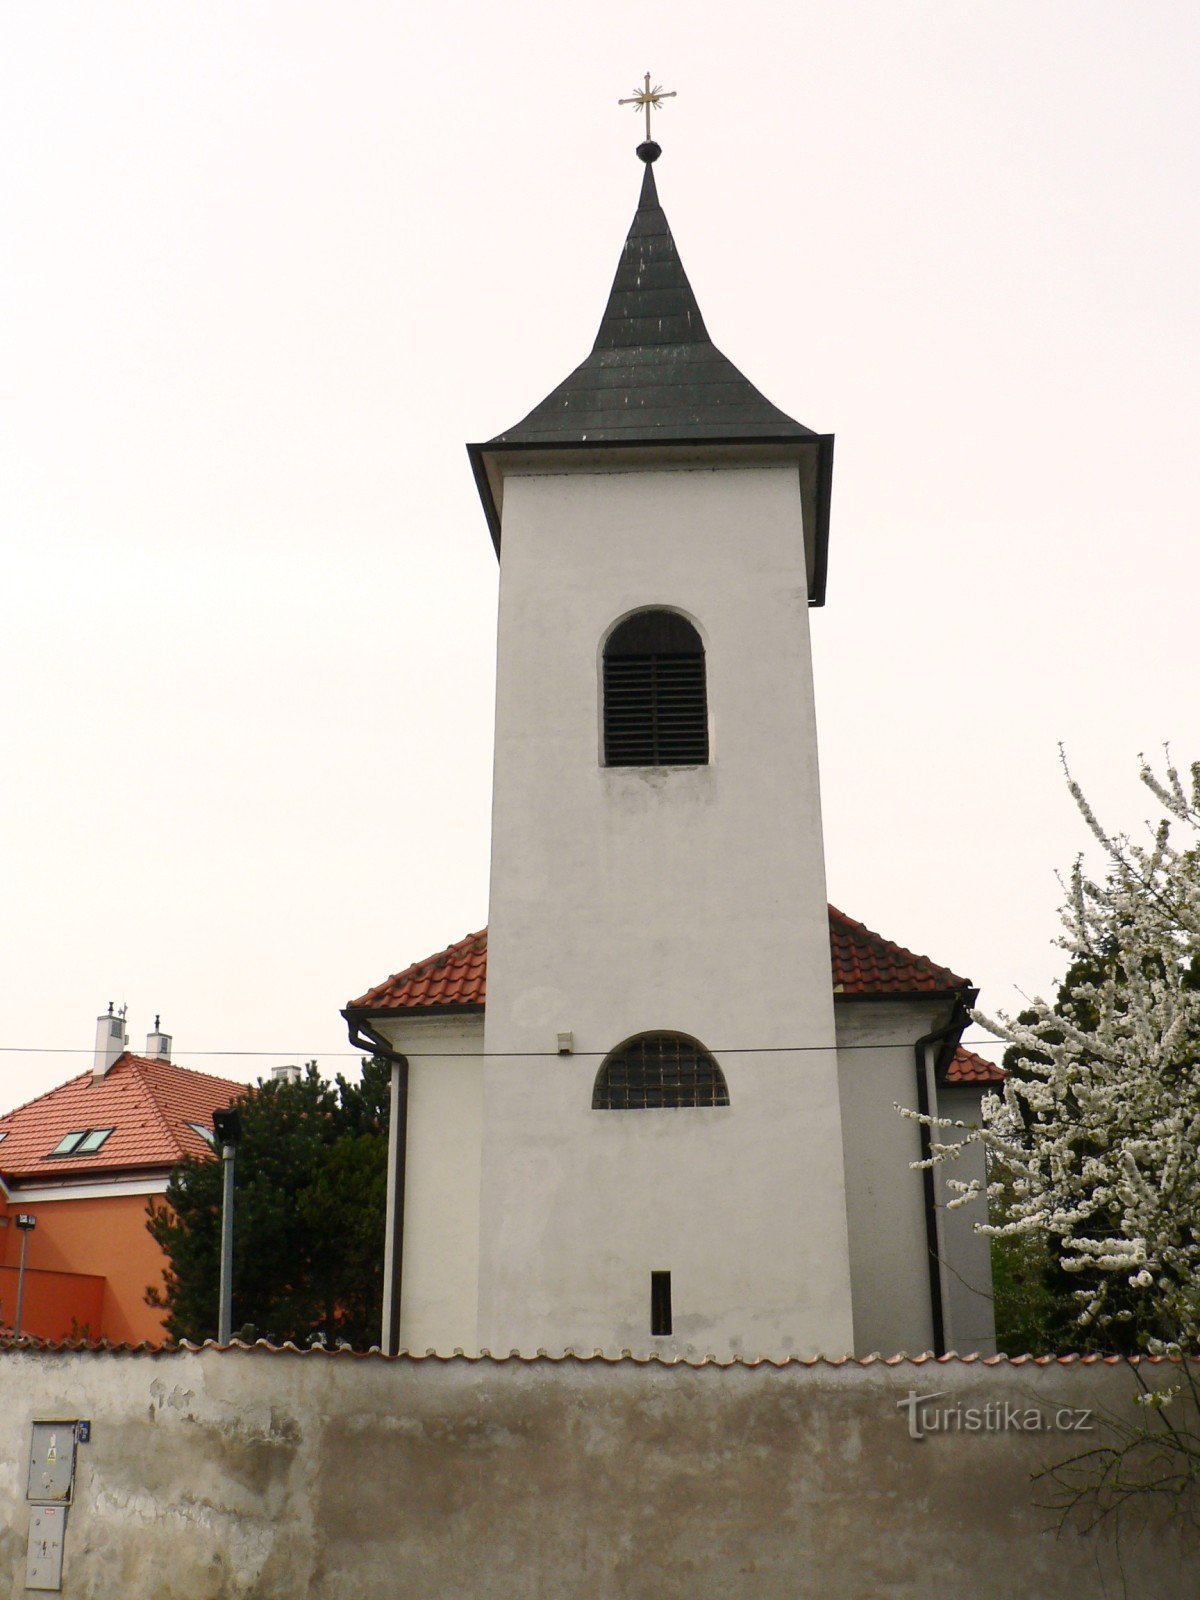 Hrnčíře (Prague) - Nhà thờ St. Procopius